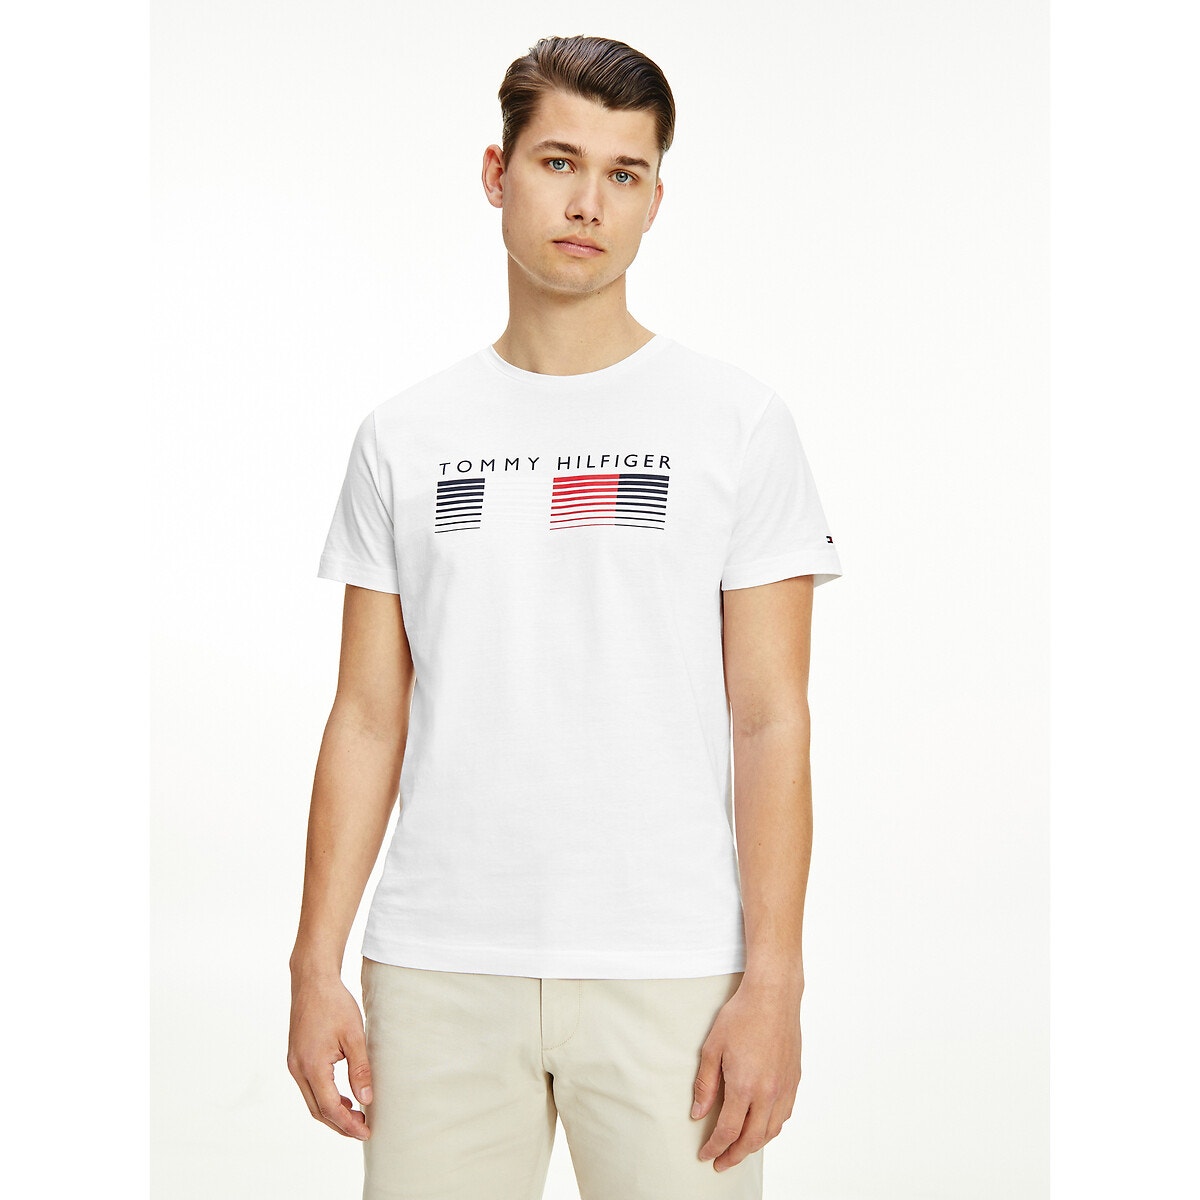 ΑΝΔΡΑΣ | Μπλούζες & Πουκάμισα | T-shirts Κοντομάνικο T-shirt, Fade Graphic Corp